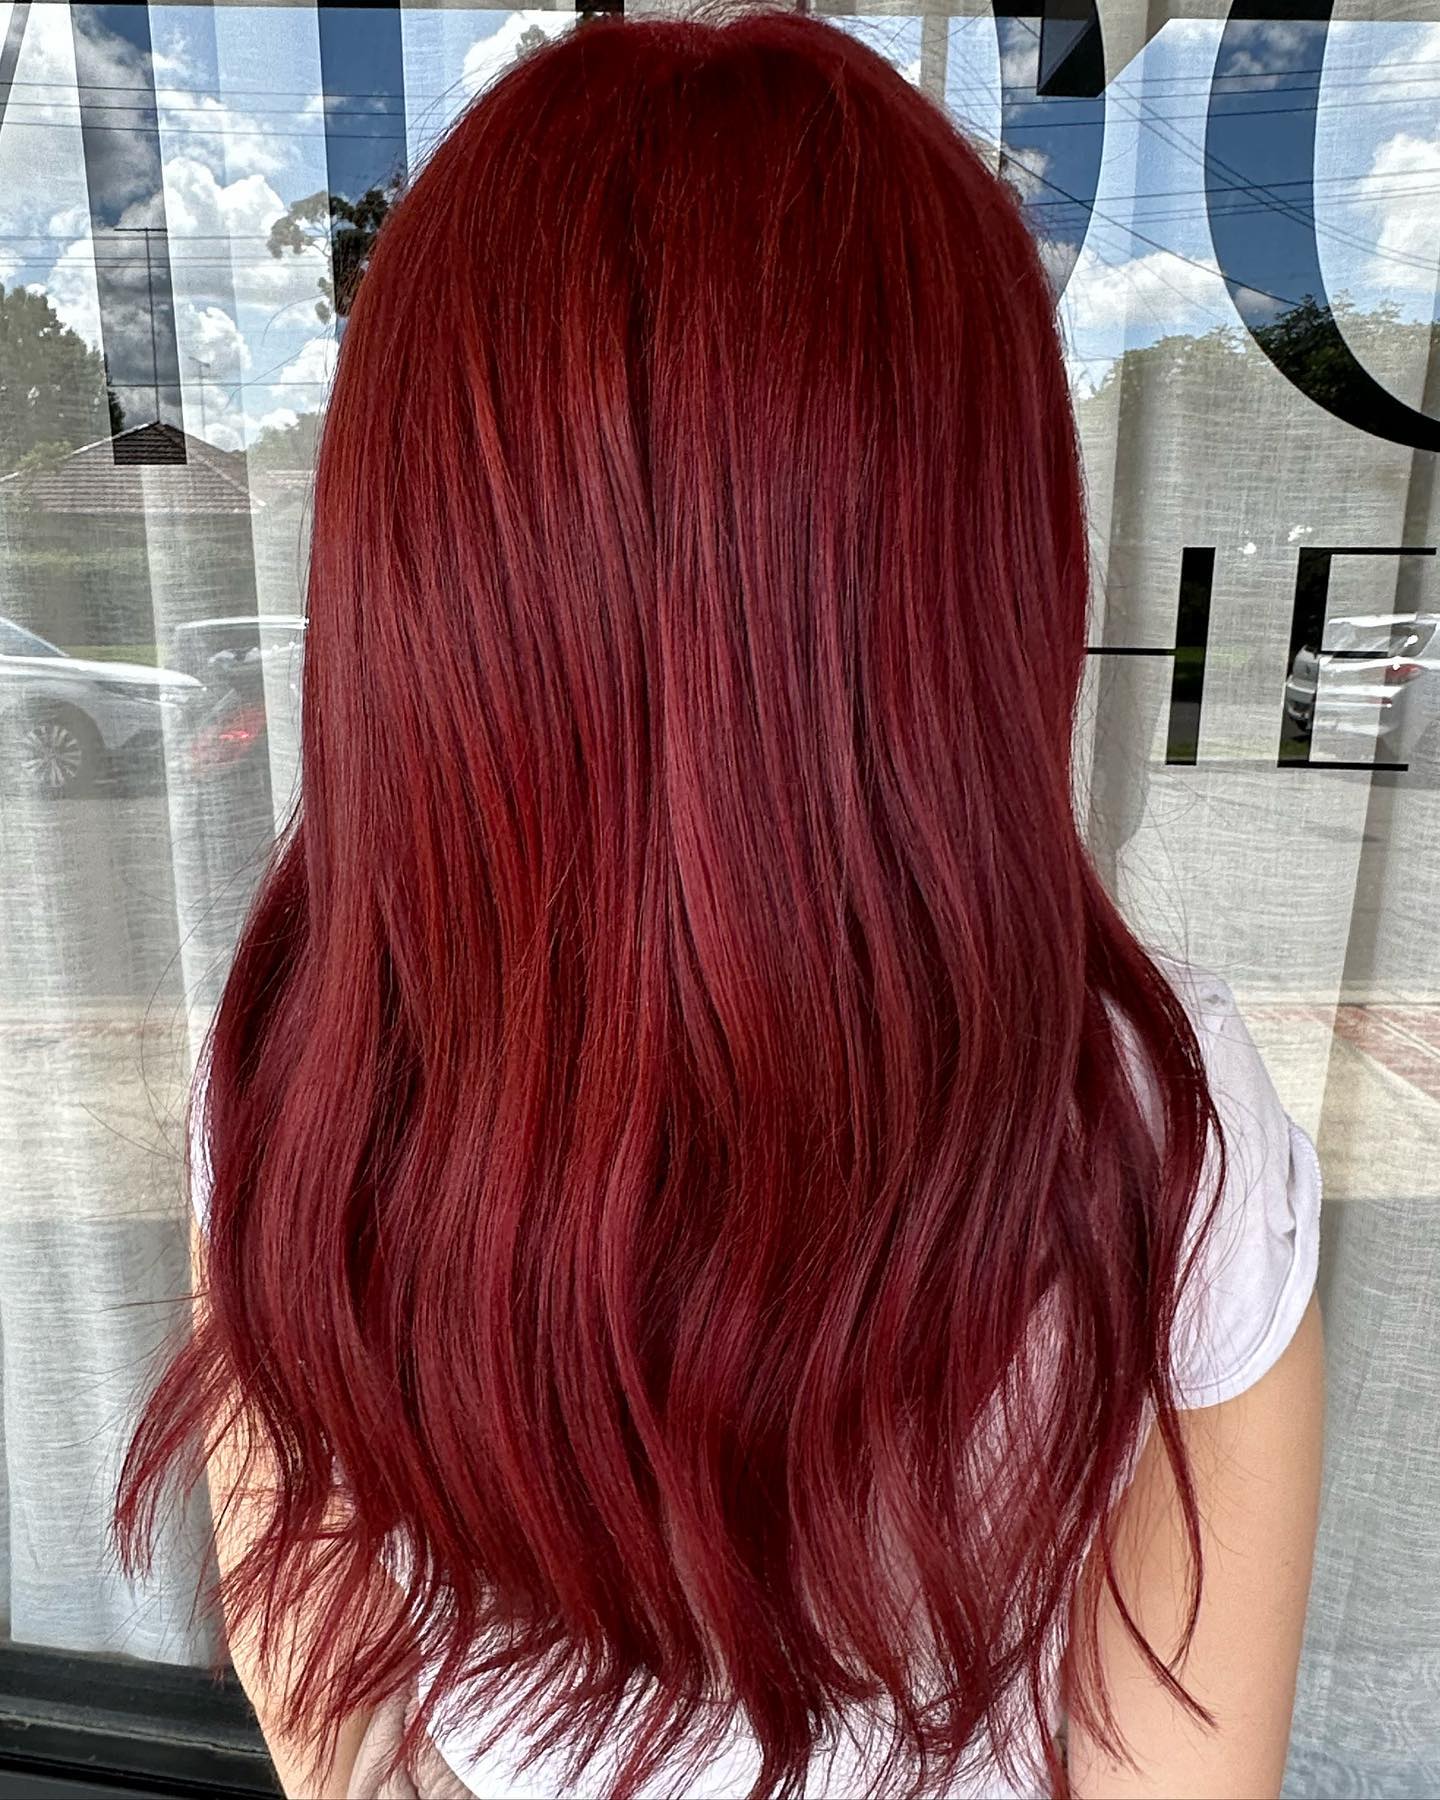 bright red hair color 143 Bright Red Hair Color | Bright red hair color for dark hair | Bright red hair color ideas Bright Red Hair Color